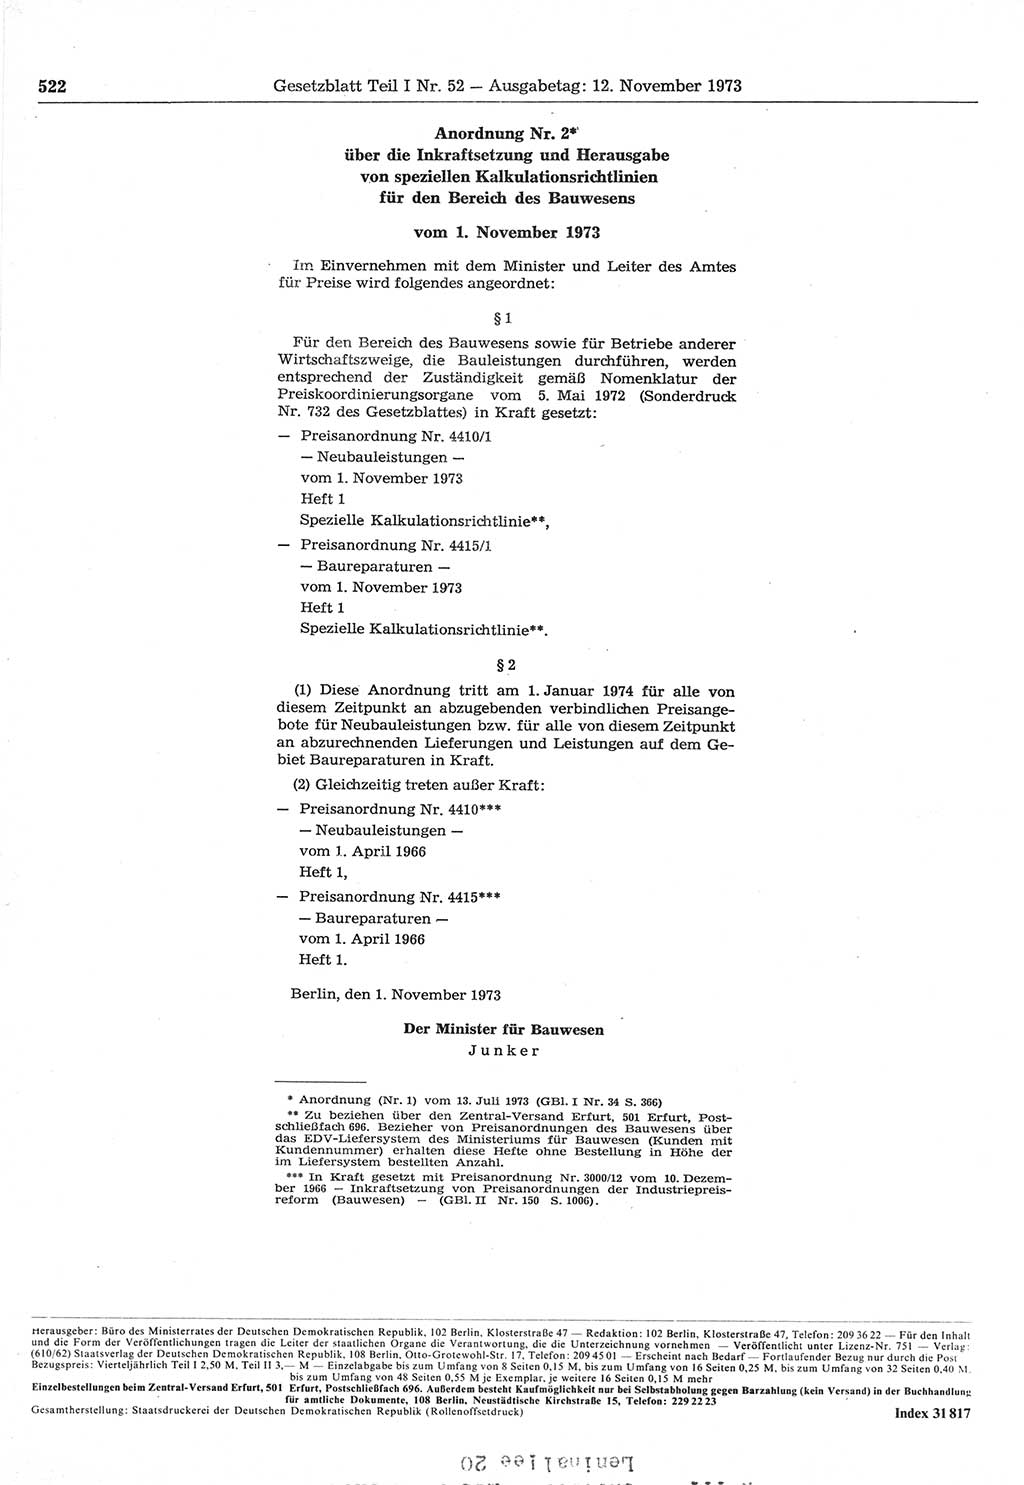 Gesetzblatt (GBl.) der Deutschen Demokratischen Republik (DDR) Teil Ⅰ 1973, Seite 522 (GBl. DDR Ⅰ 1973, S. 522)